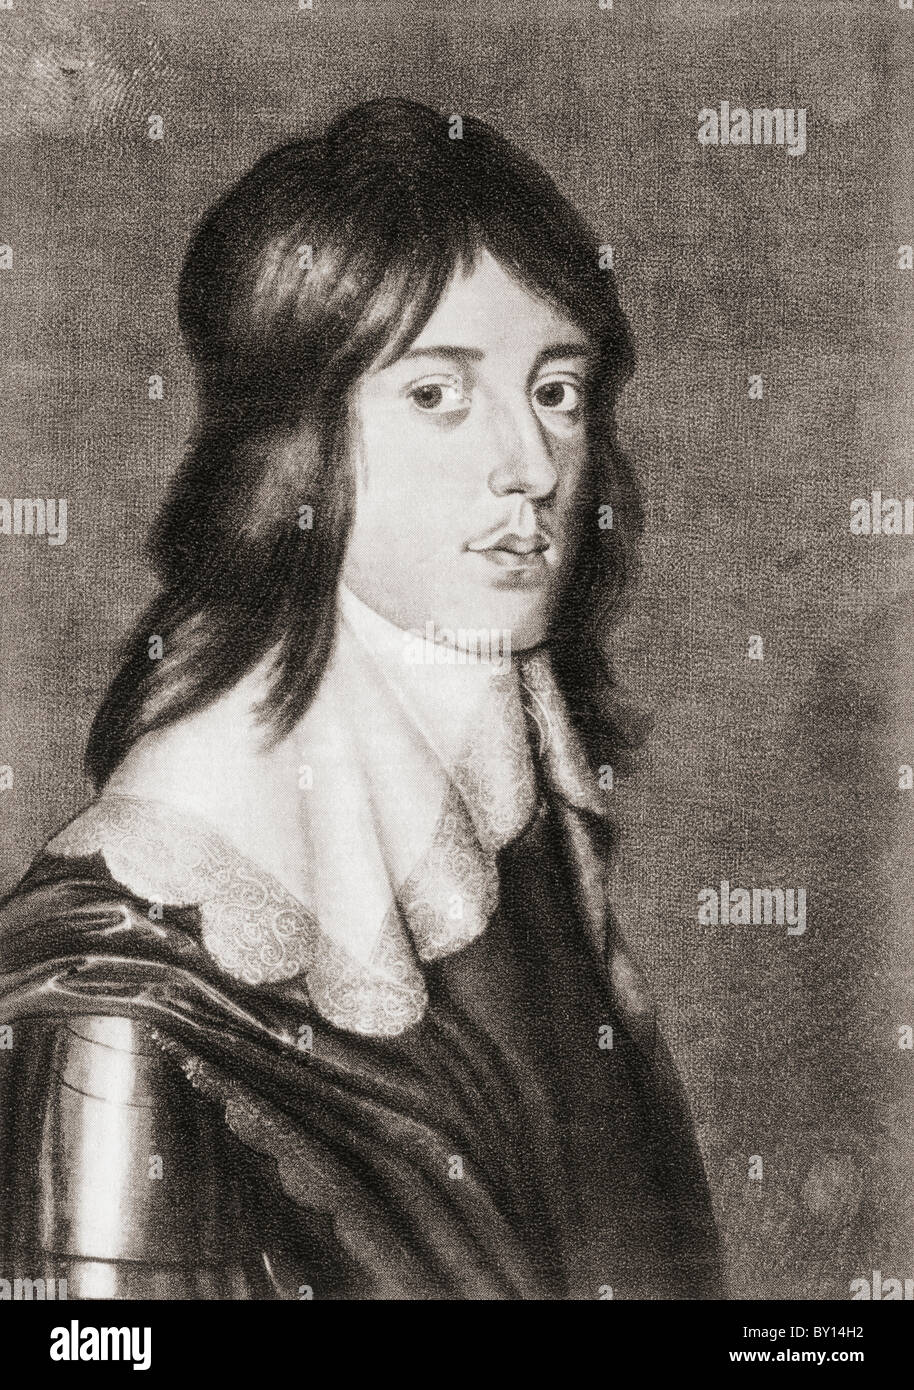 Guglielmo II, principe di Orange, 1626 a 1650. Da Geschiedenis van Nederland, pubblicato nel 1936. Foto Stock